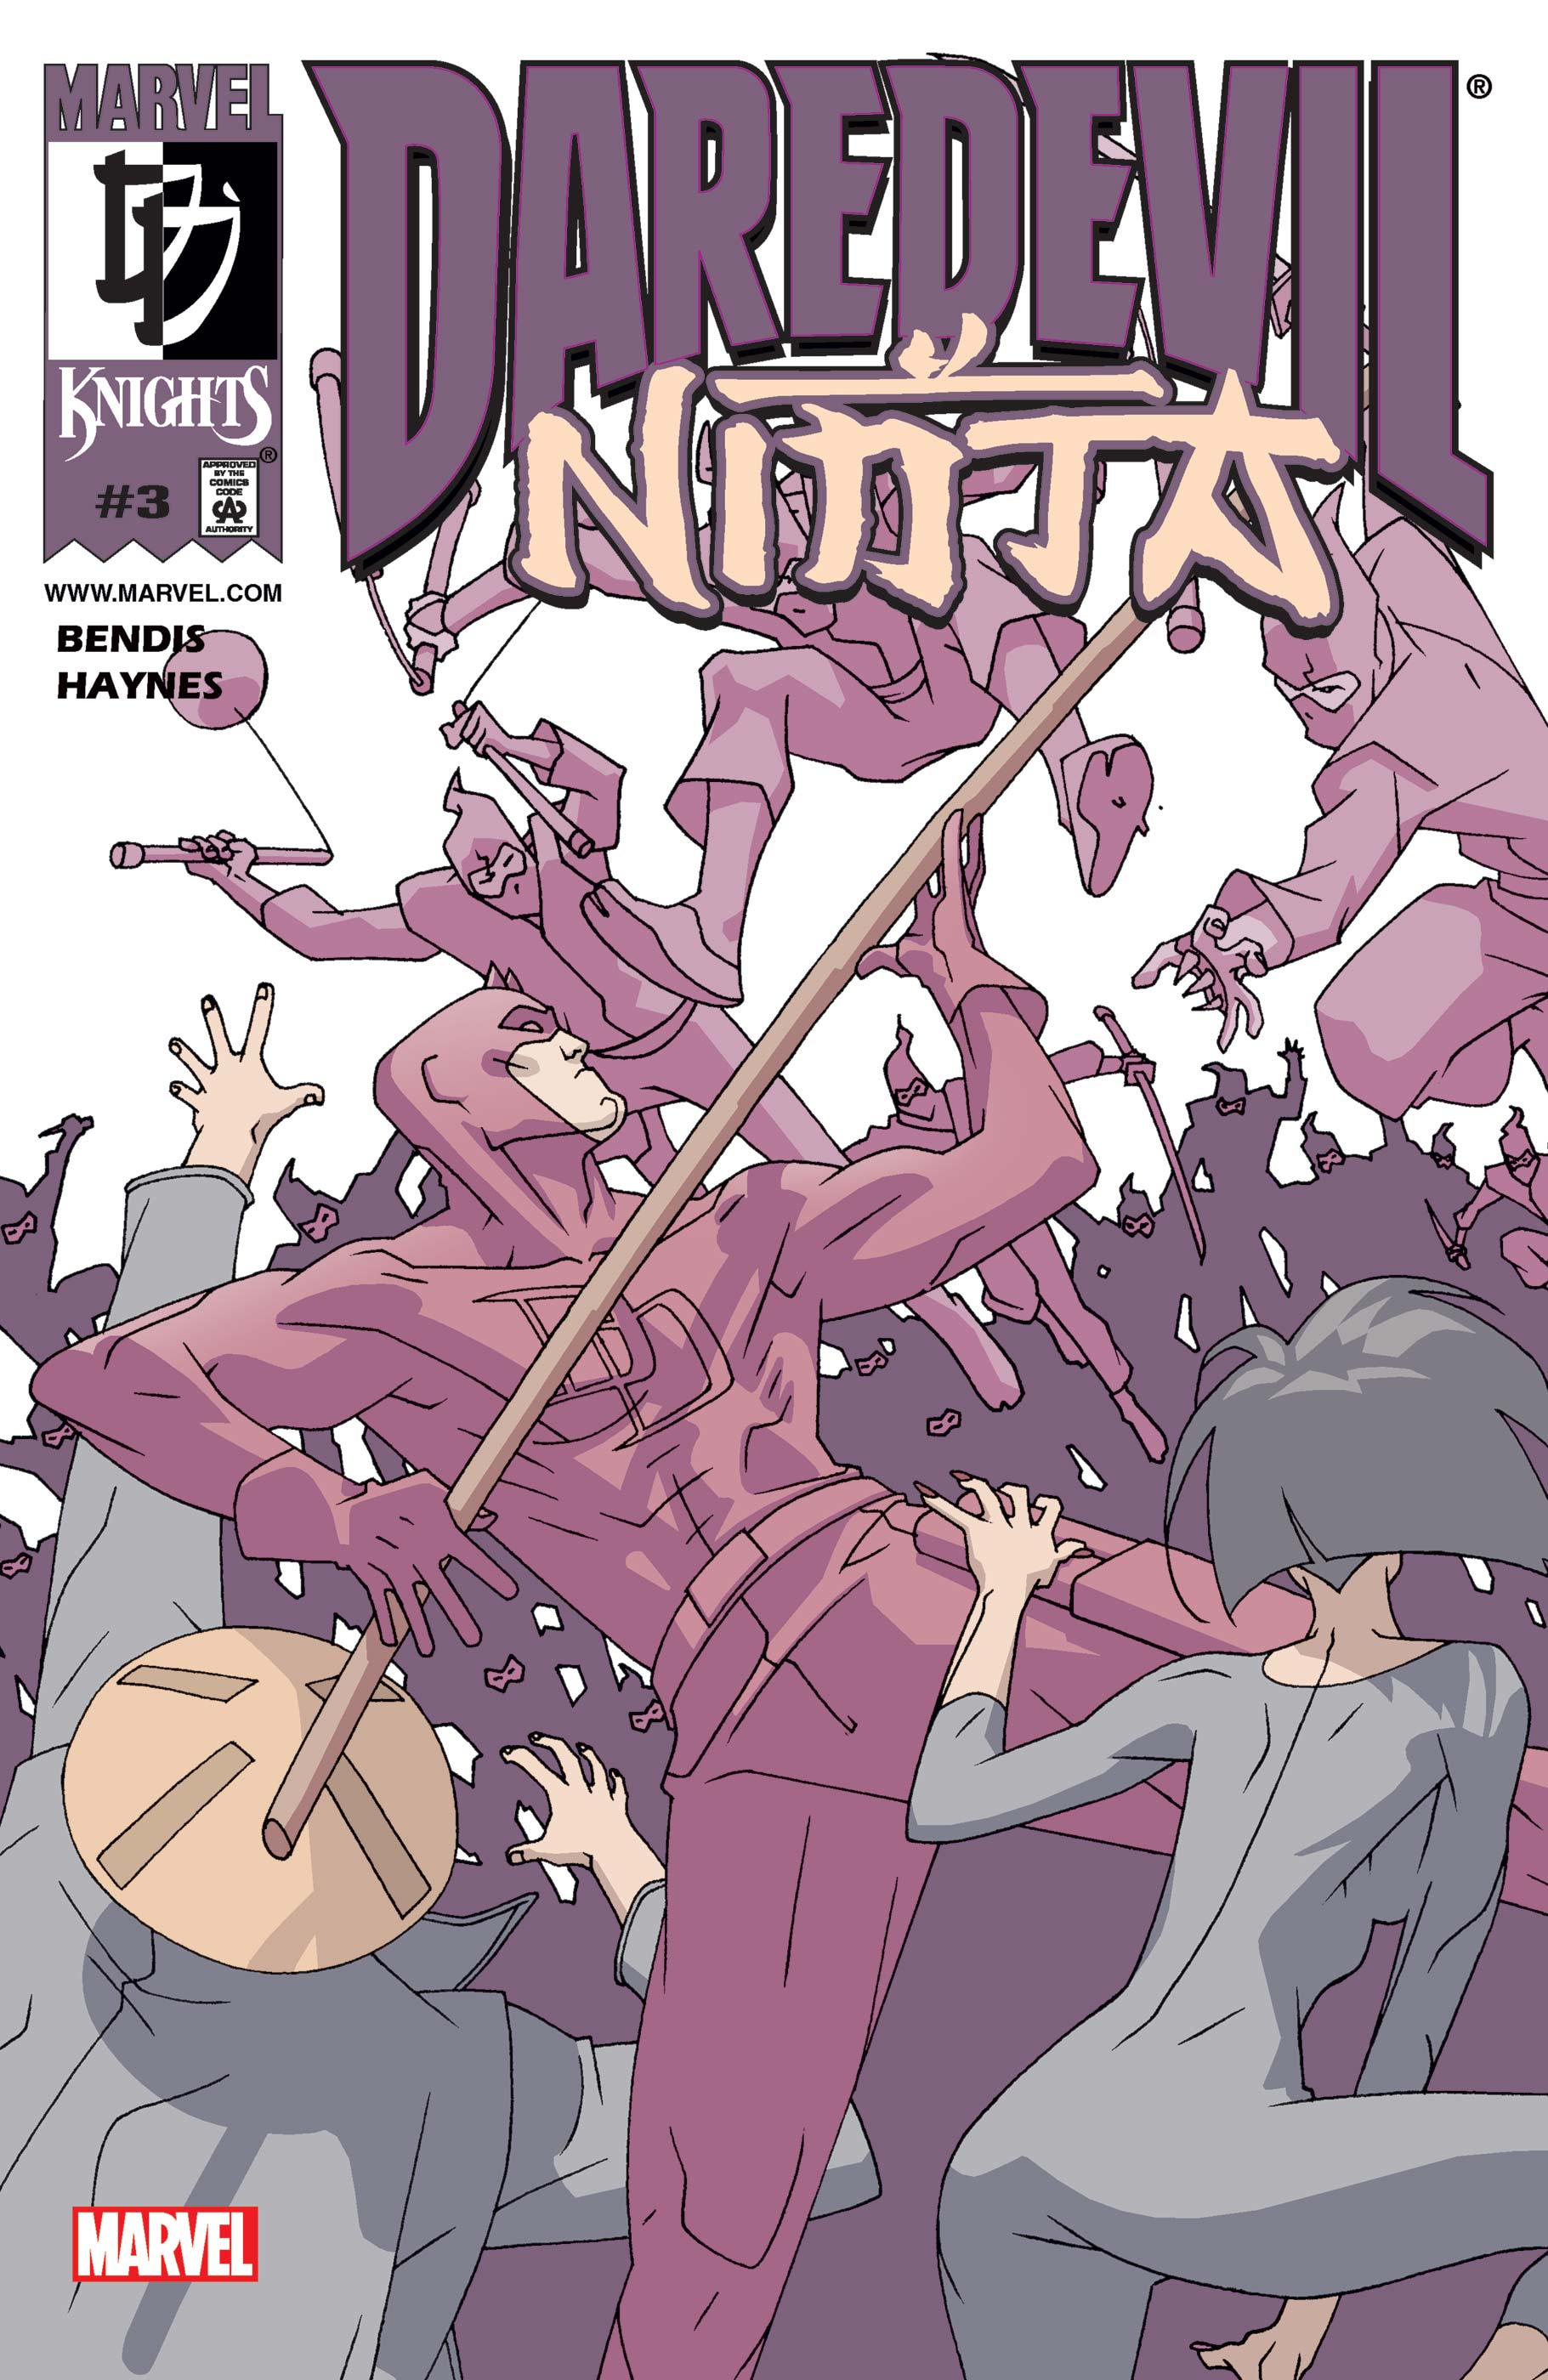 Daredevil: Ninja (2000) #3